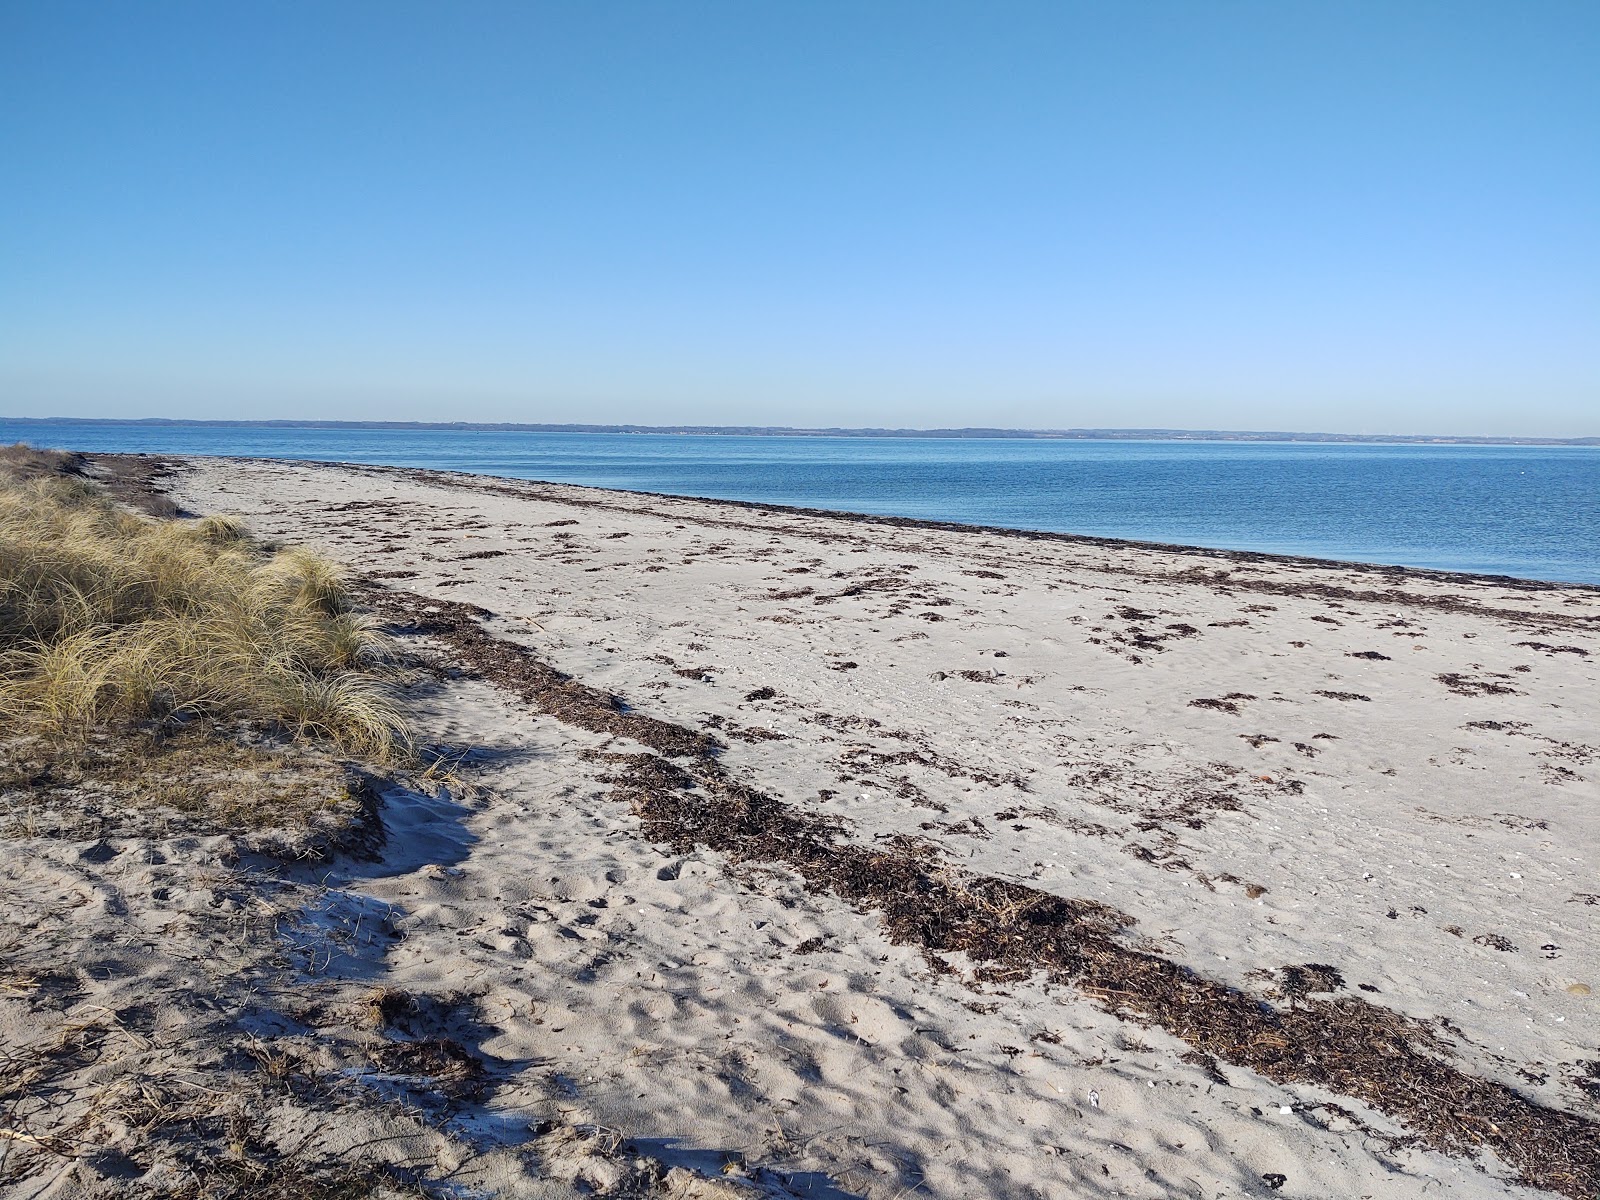 Lohals Nordstrand Beach'in fotoğrafı geniş plaj ile birlikte